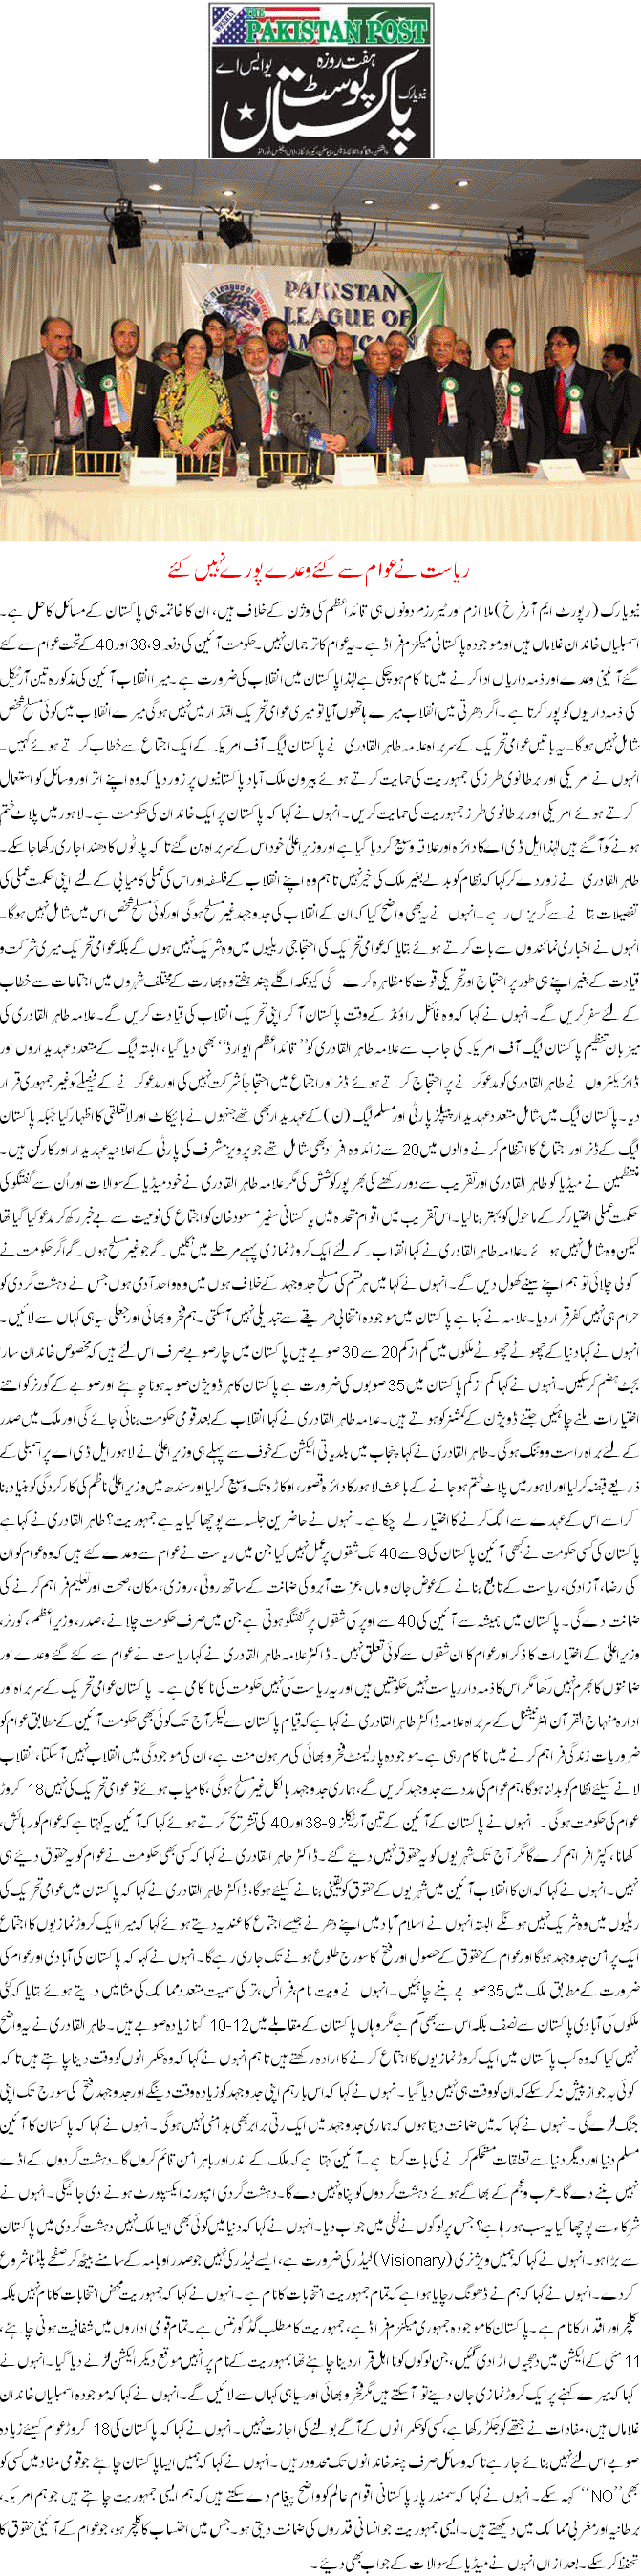 Minhaj-ul-Quran  Print Media Coverage Weekly Pakistan Post USA